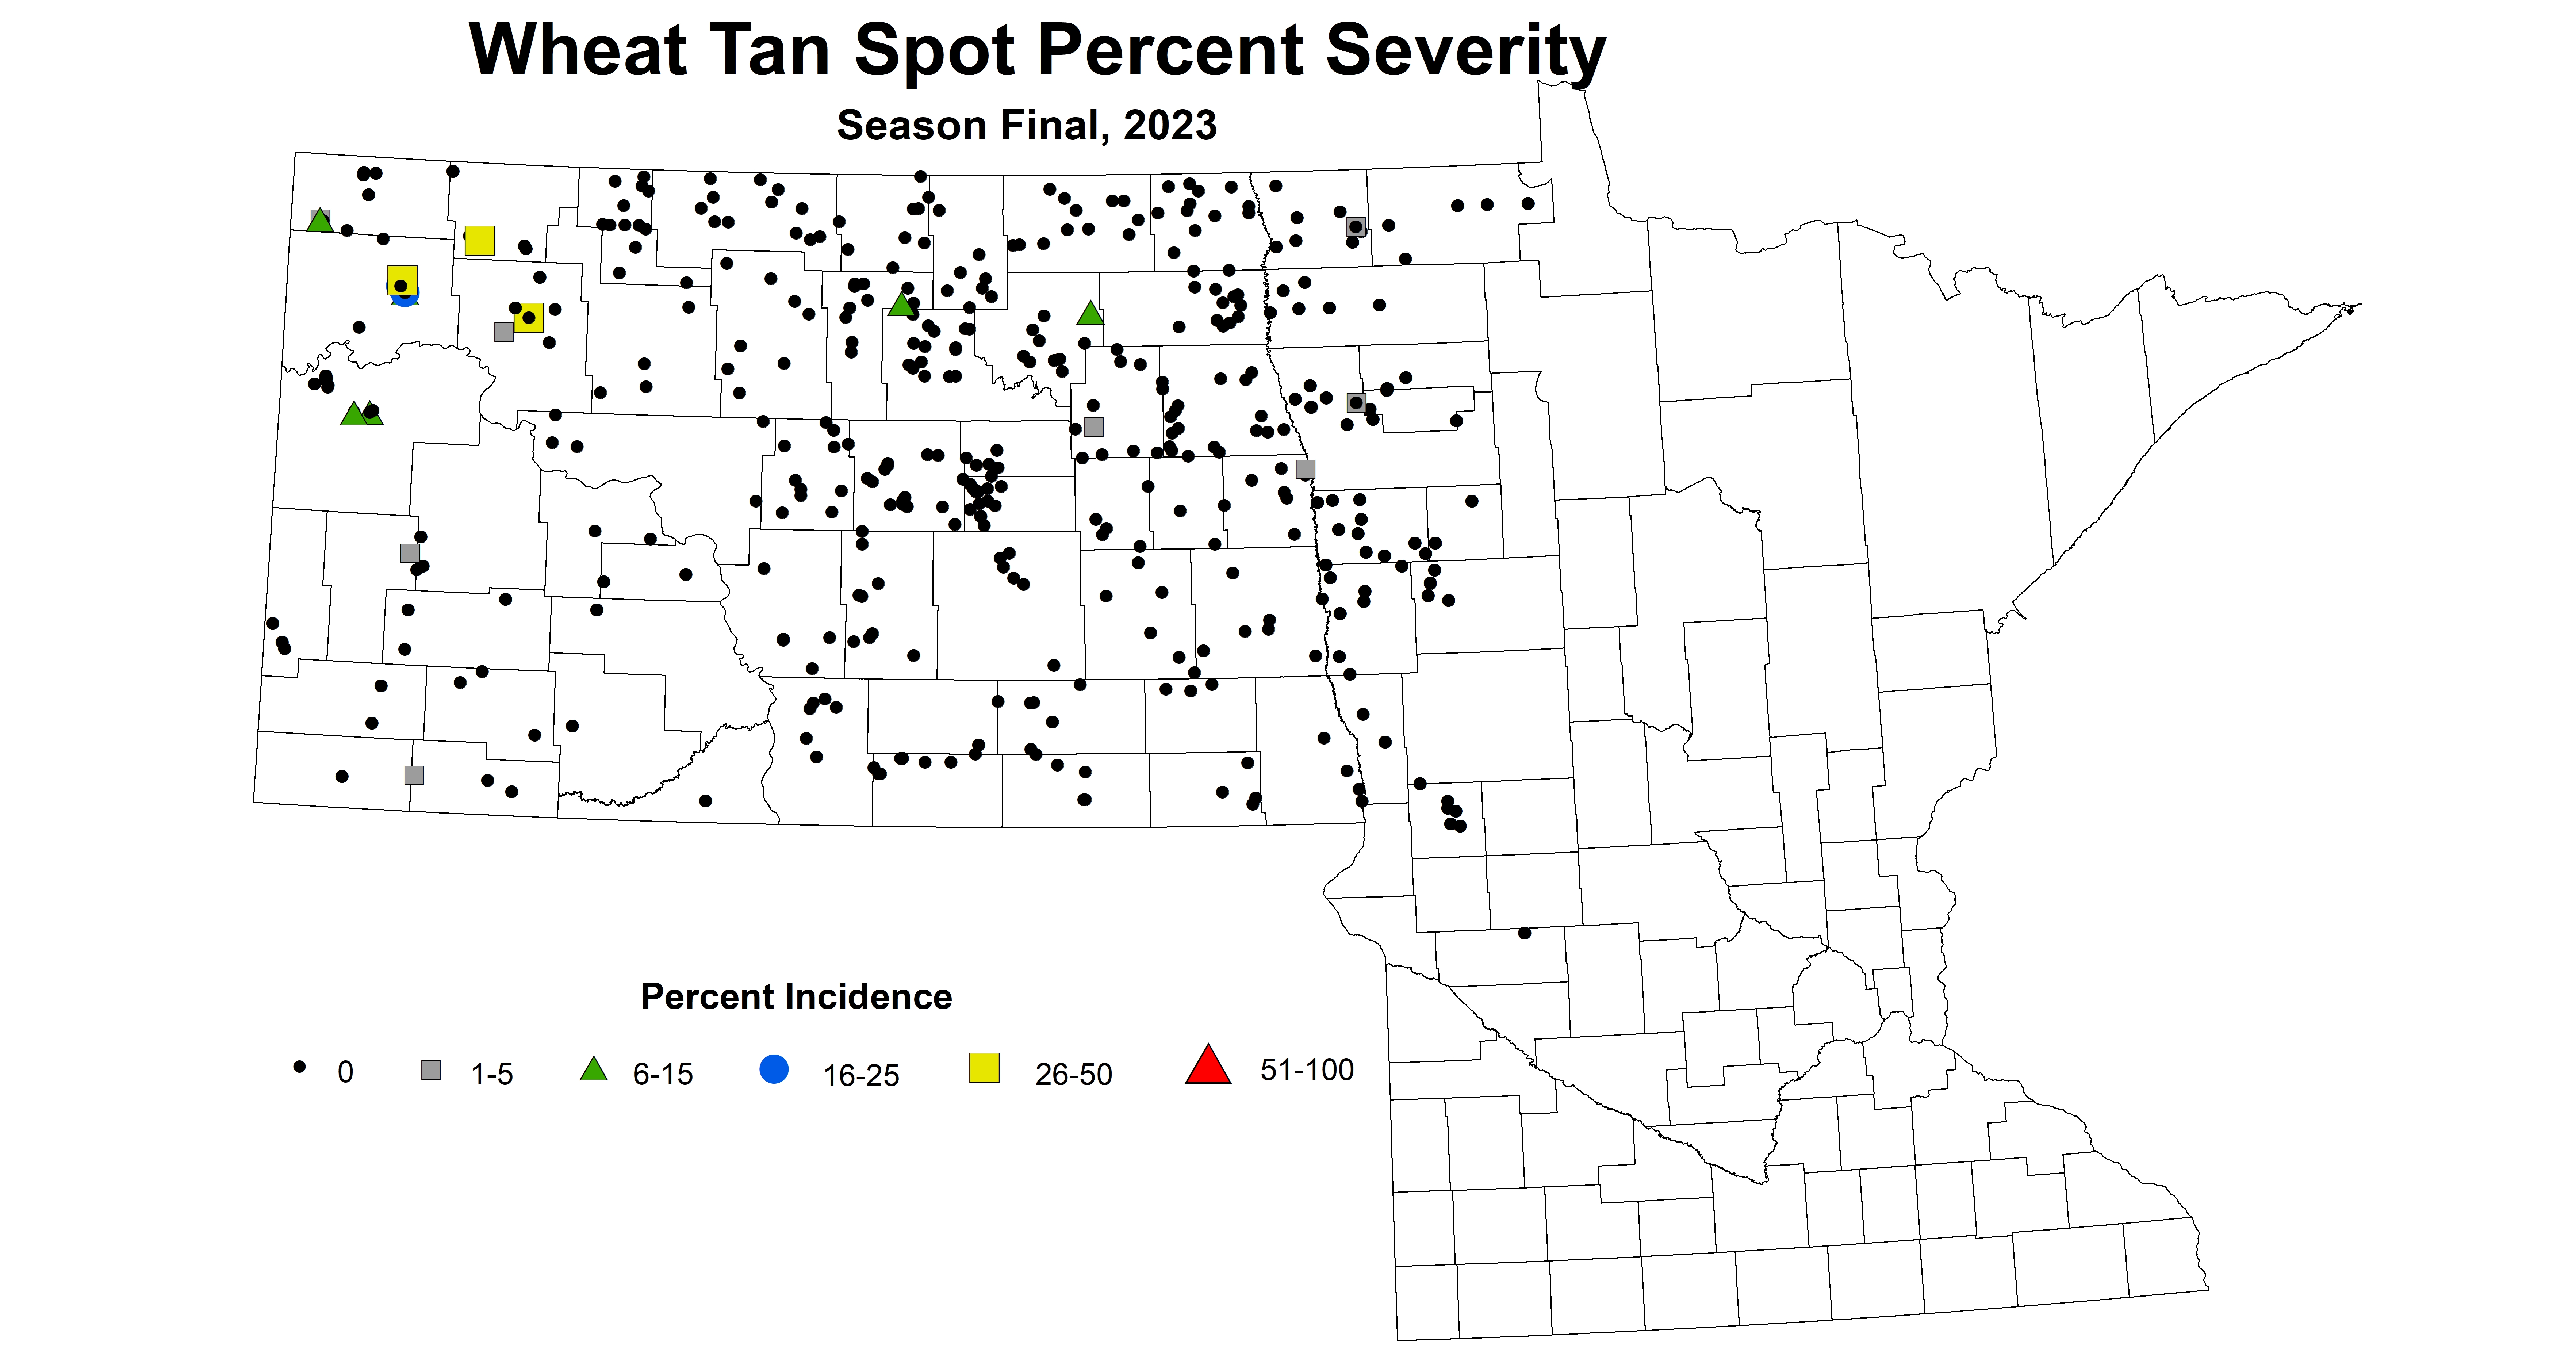 wheat tan spot severity season final 2023